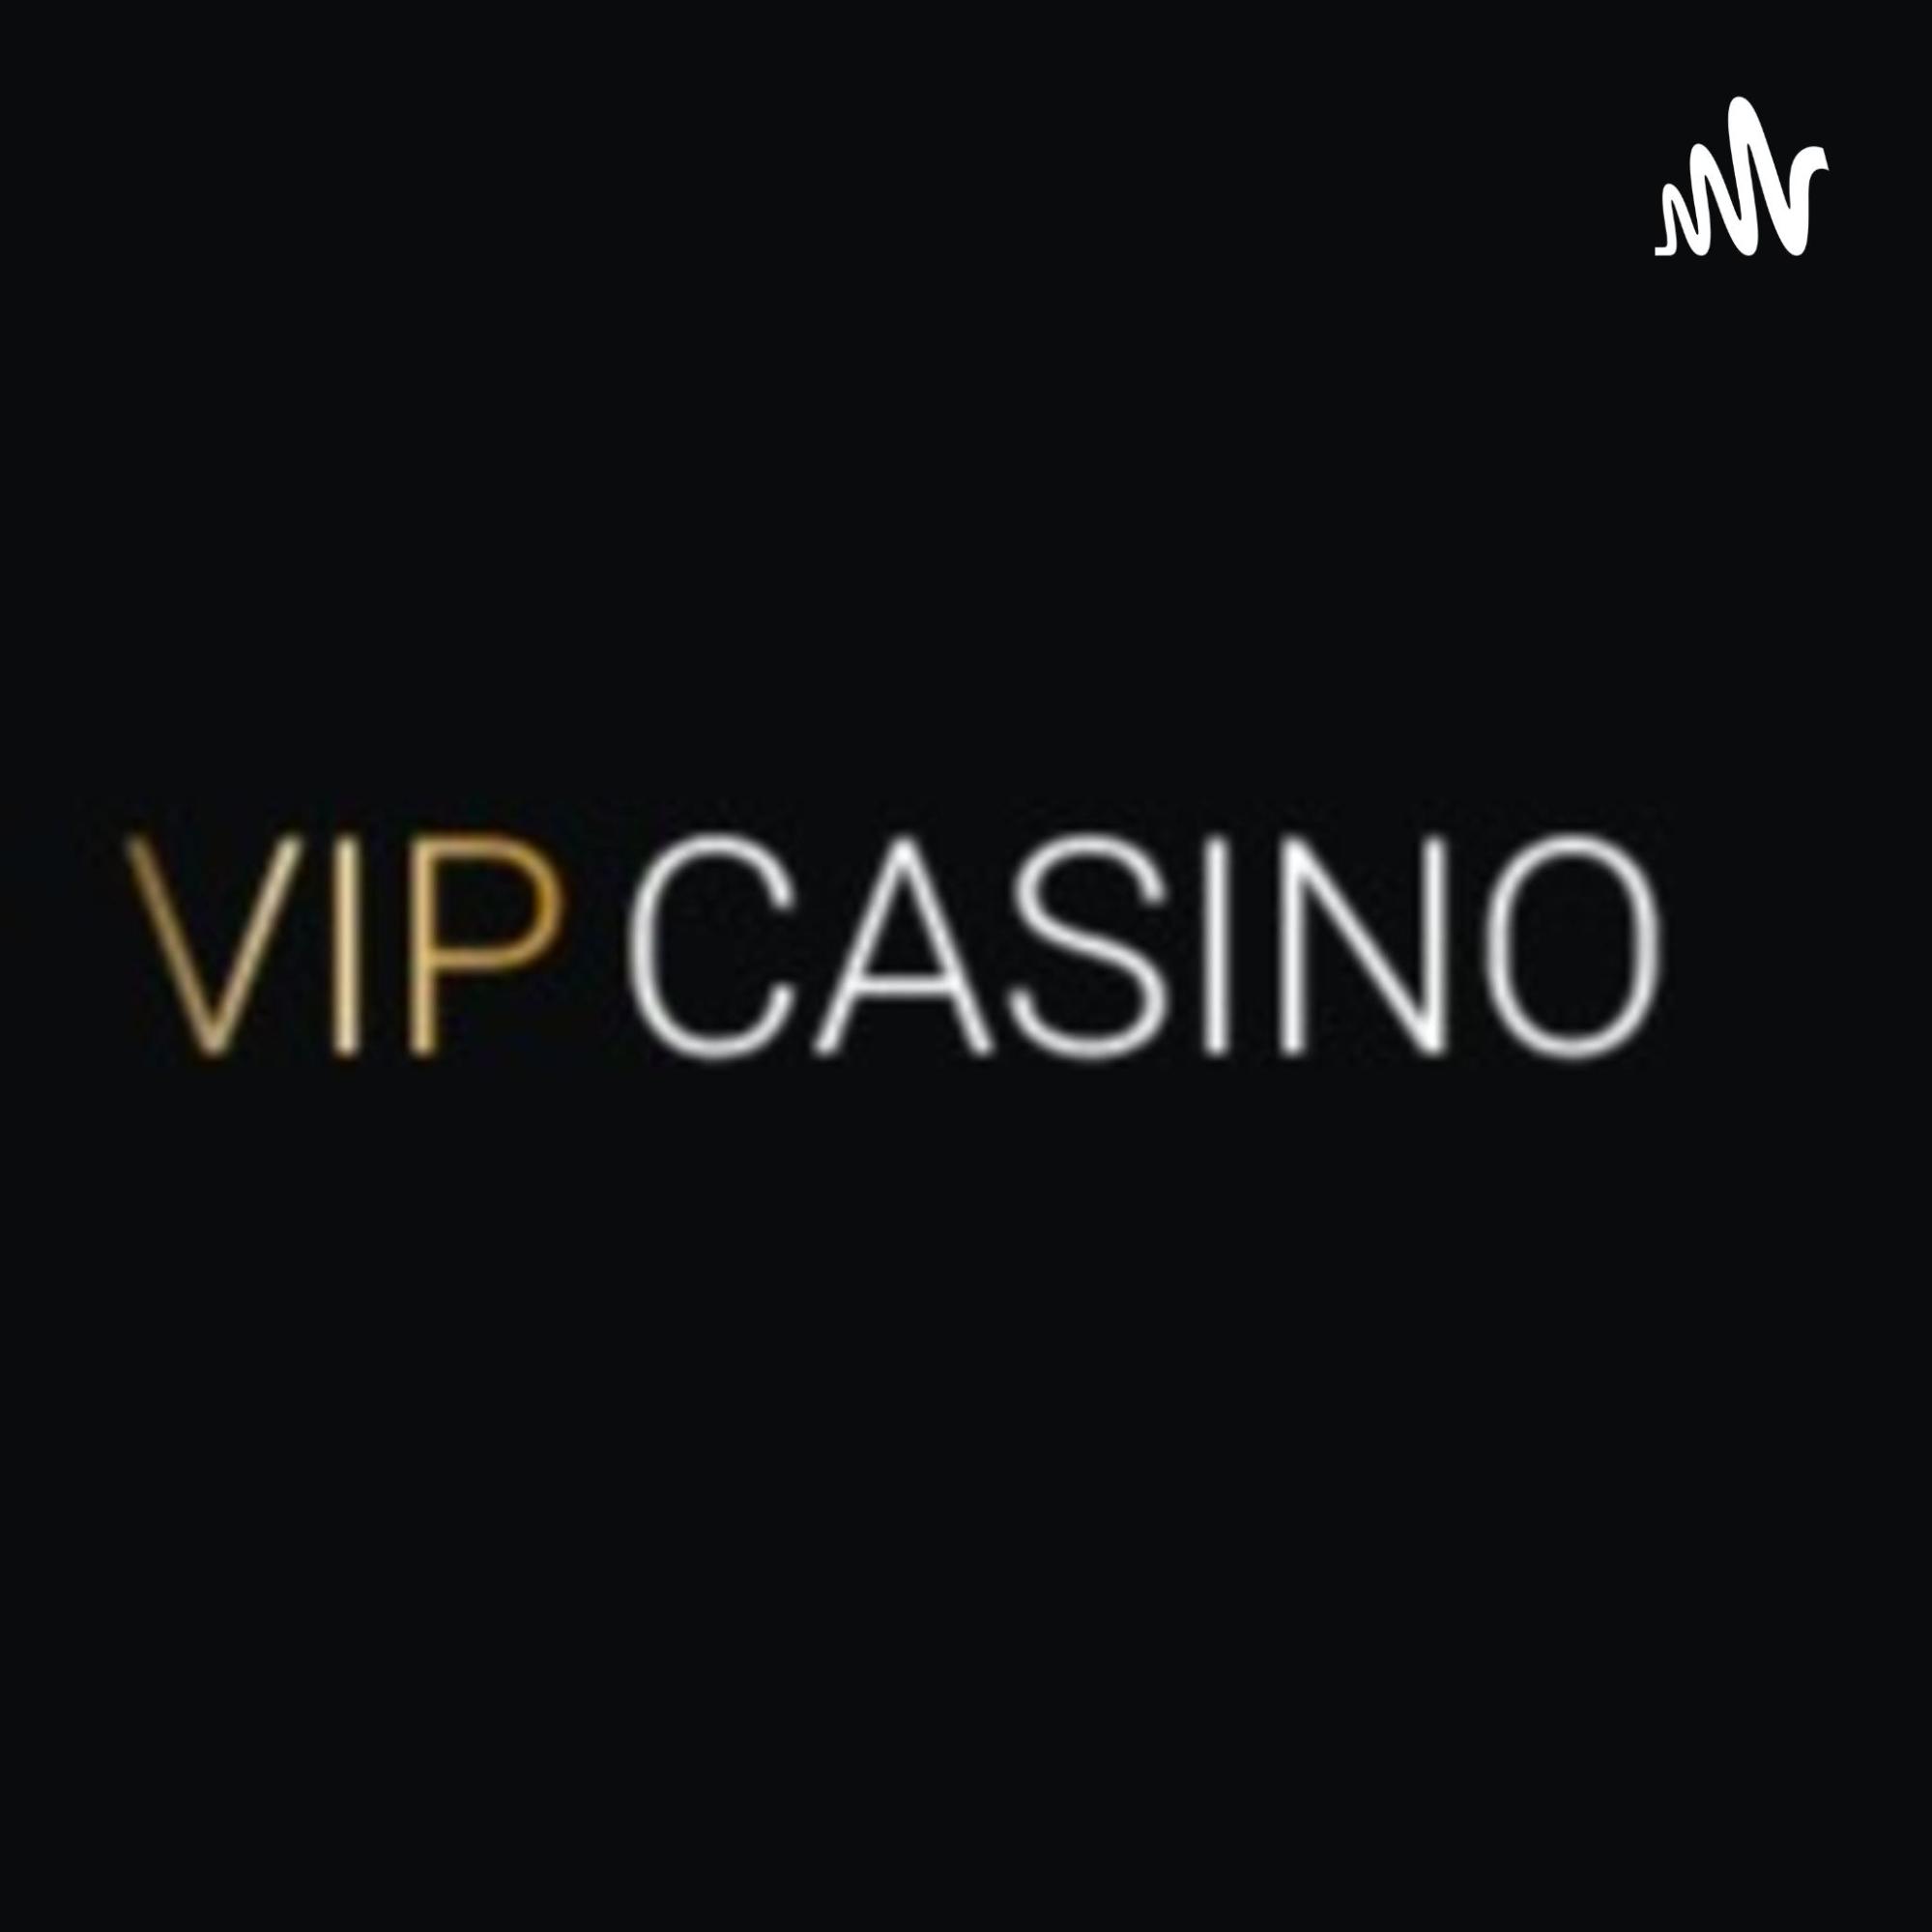 Огляд найпопулярнішої платформи України VIP Casino